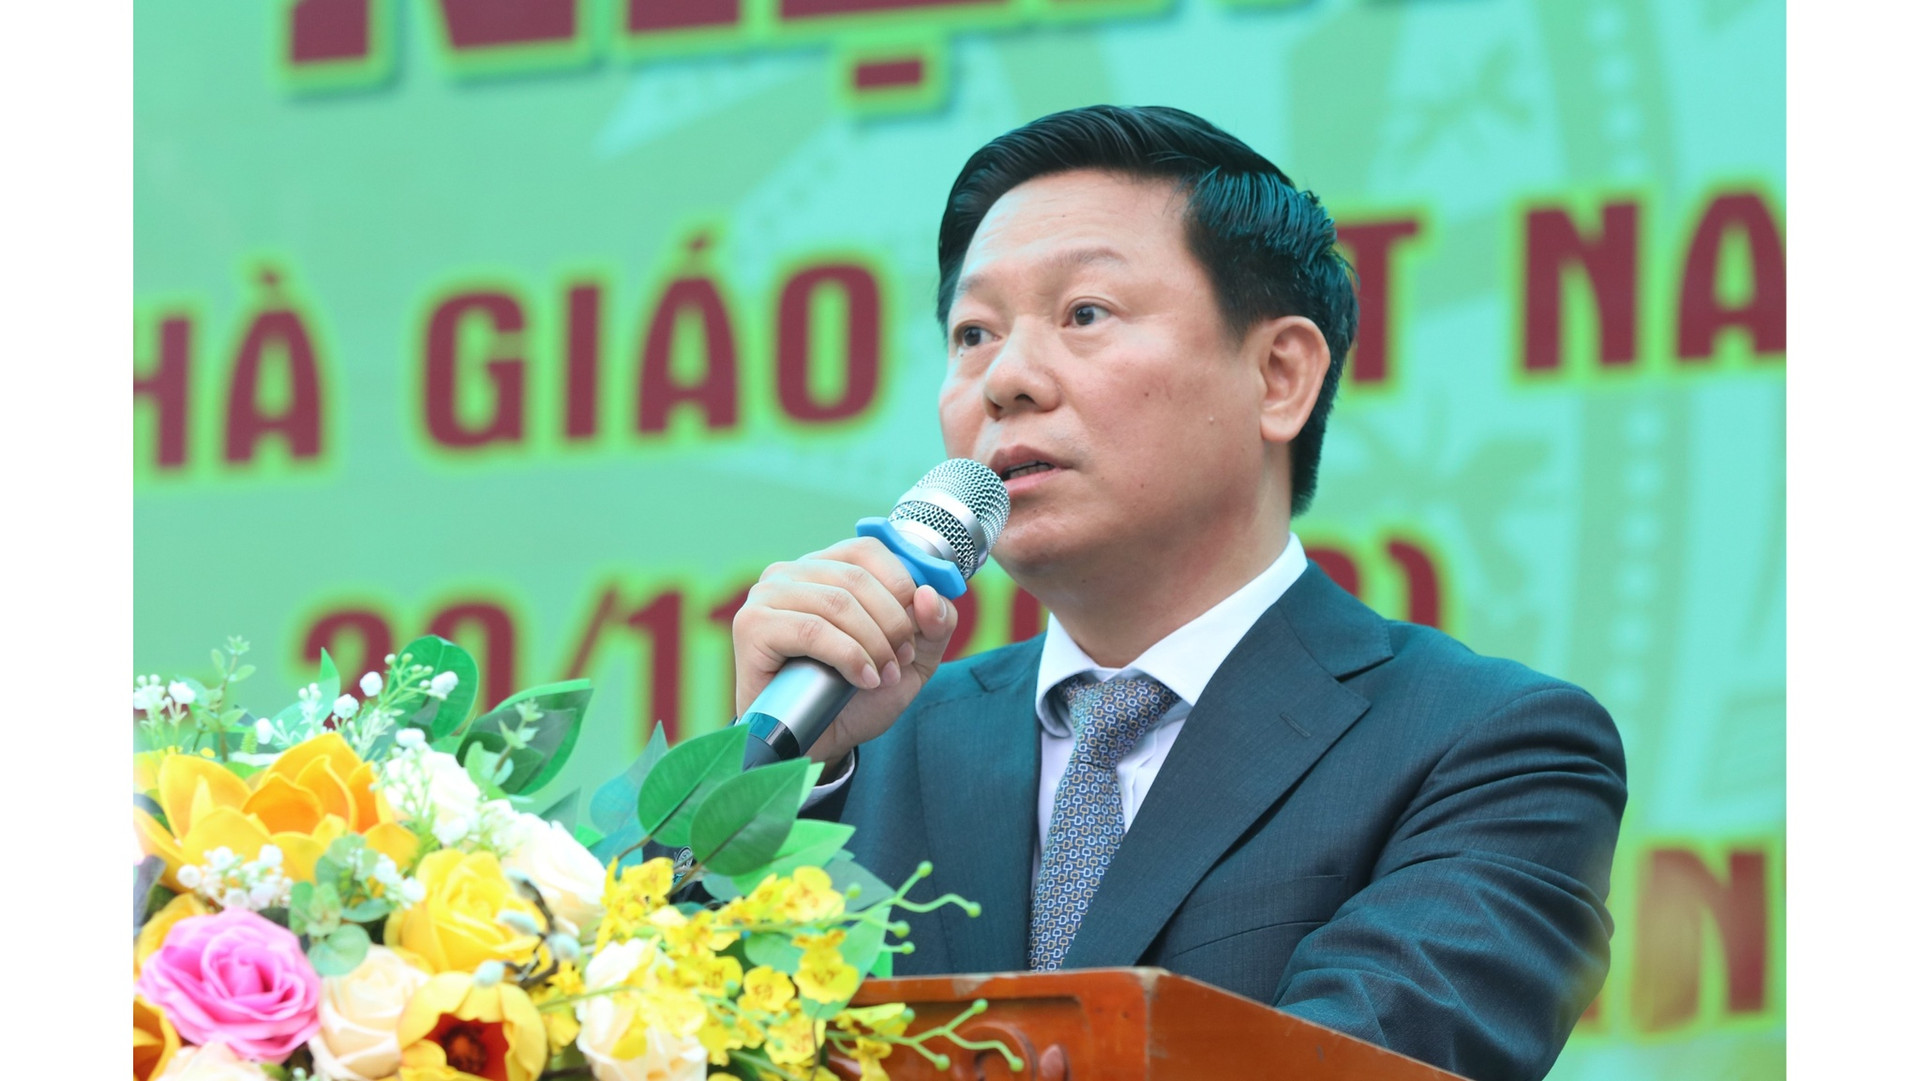 Trao học bổng Nguyễn Thái Bình tại ngôi trường có 200 học sinh giỏi quốc gia - ảnh 2